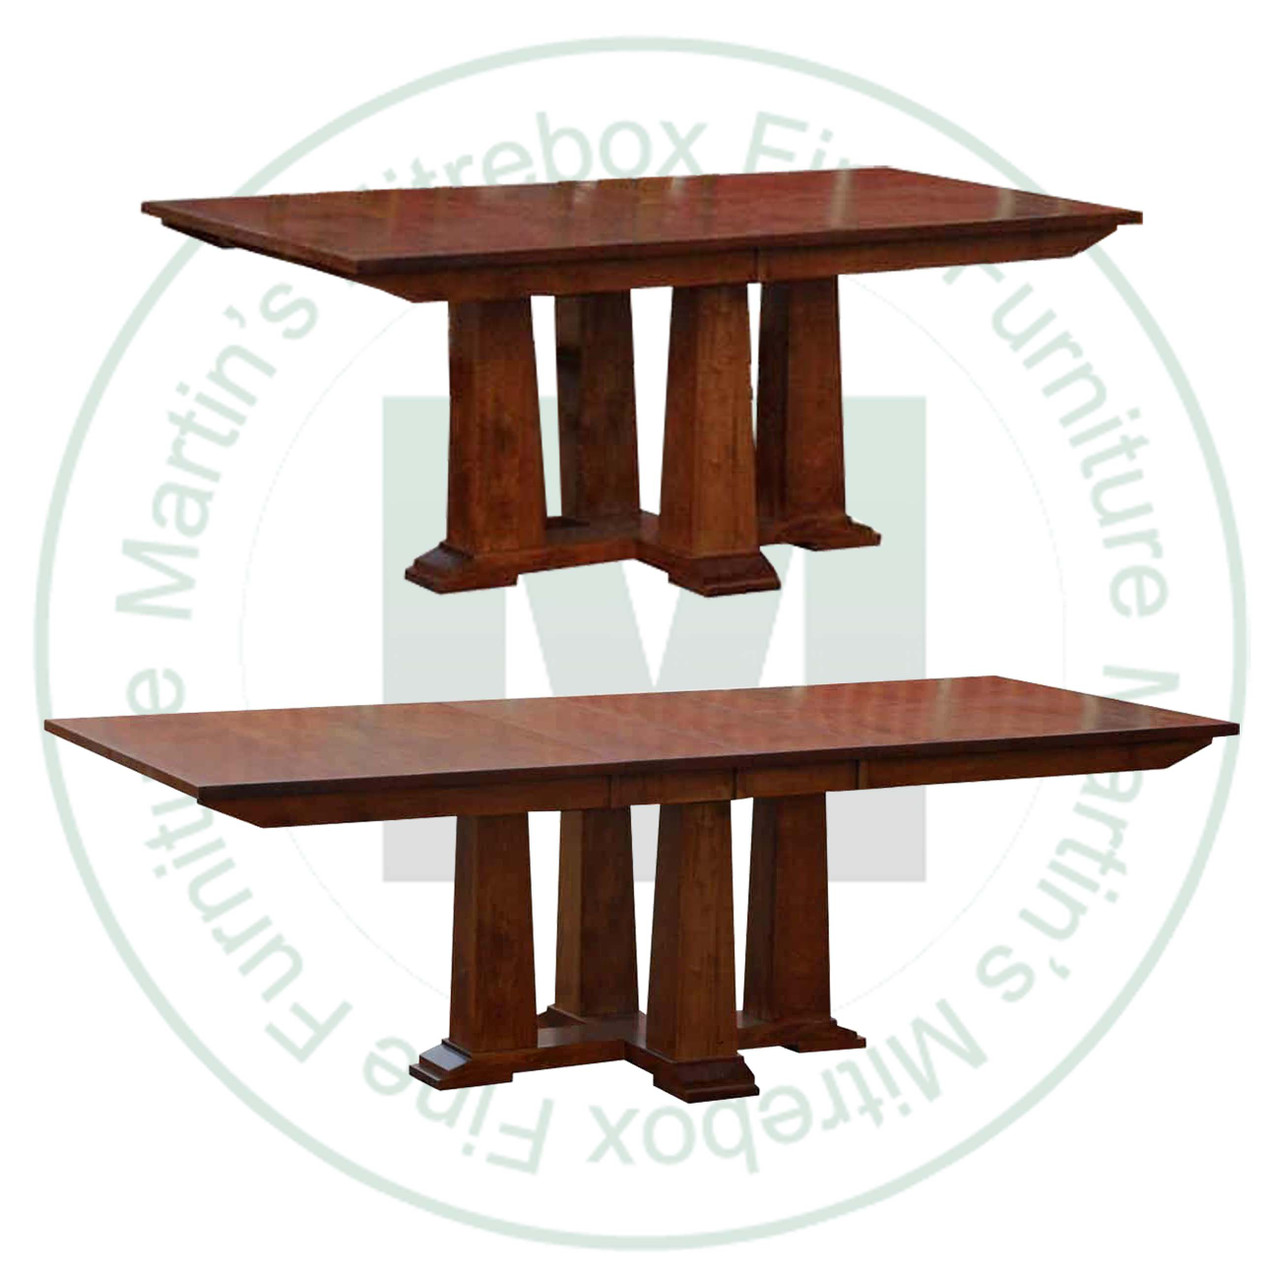 Pine Pallisade Center Extension Pedestal Table 48''D x 108''W x 30''H